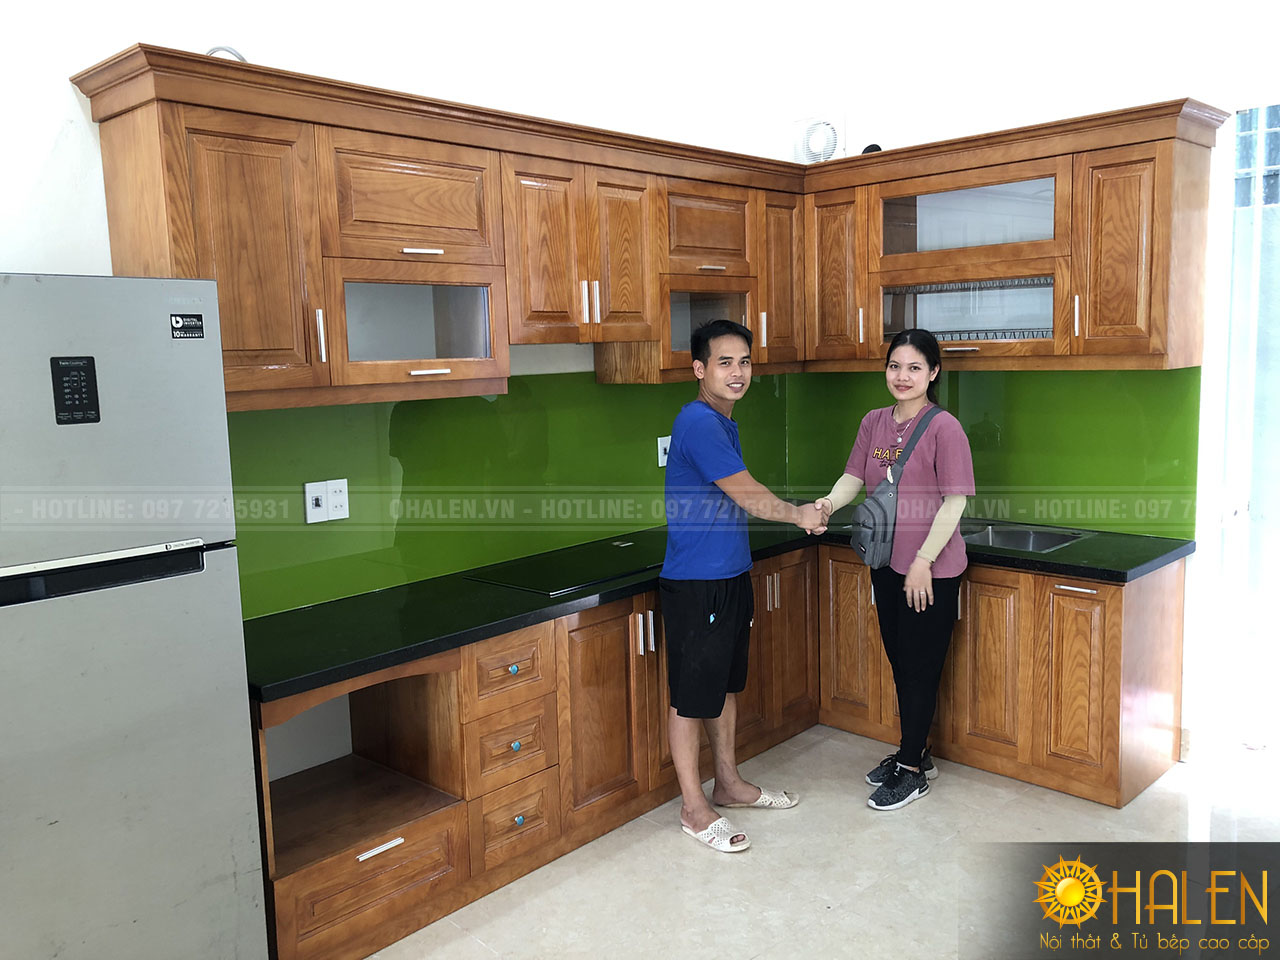 Hình ảnh khách hàng hài lòng với sản phẩm tủ bếp đẹp của nội thất OHALEN